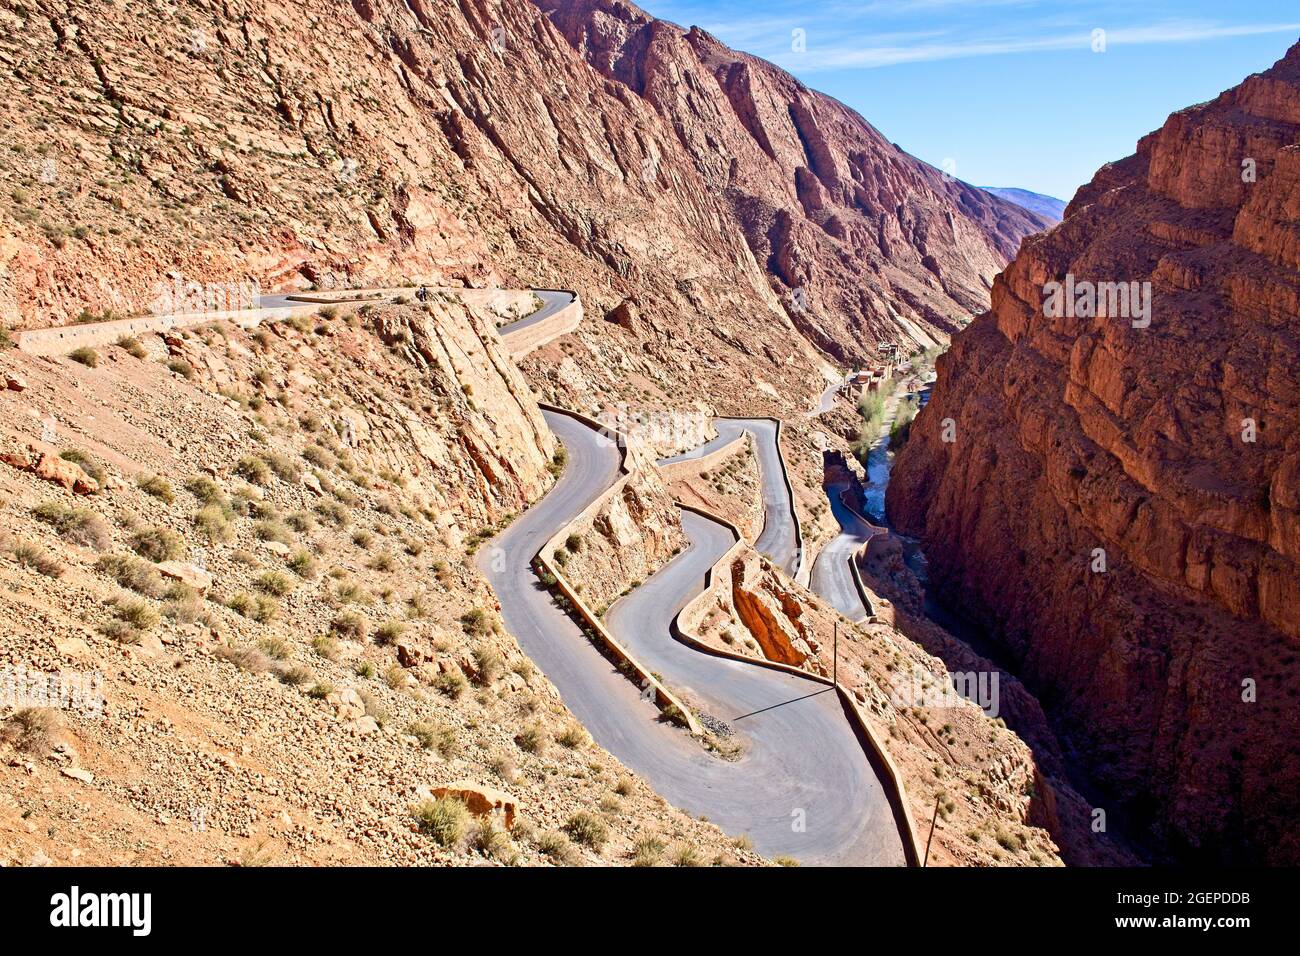 La carretera serpenteante que serpentea por el desfiladero hasta las Dades Oued, cerca de las Dades de Boumalne, Marruecos. Foto de stock